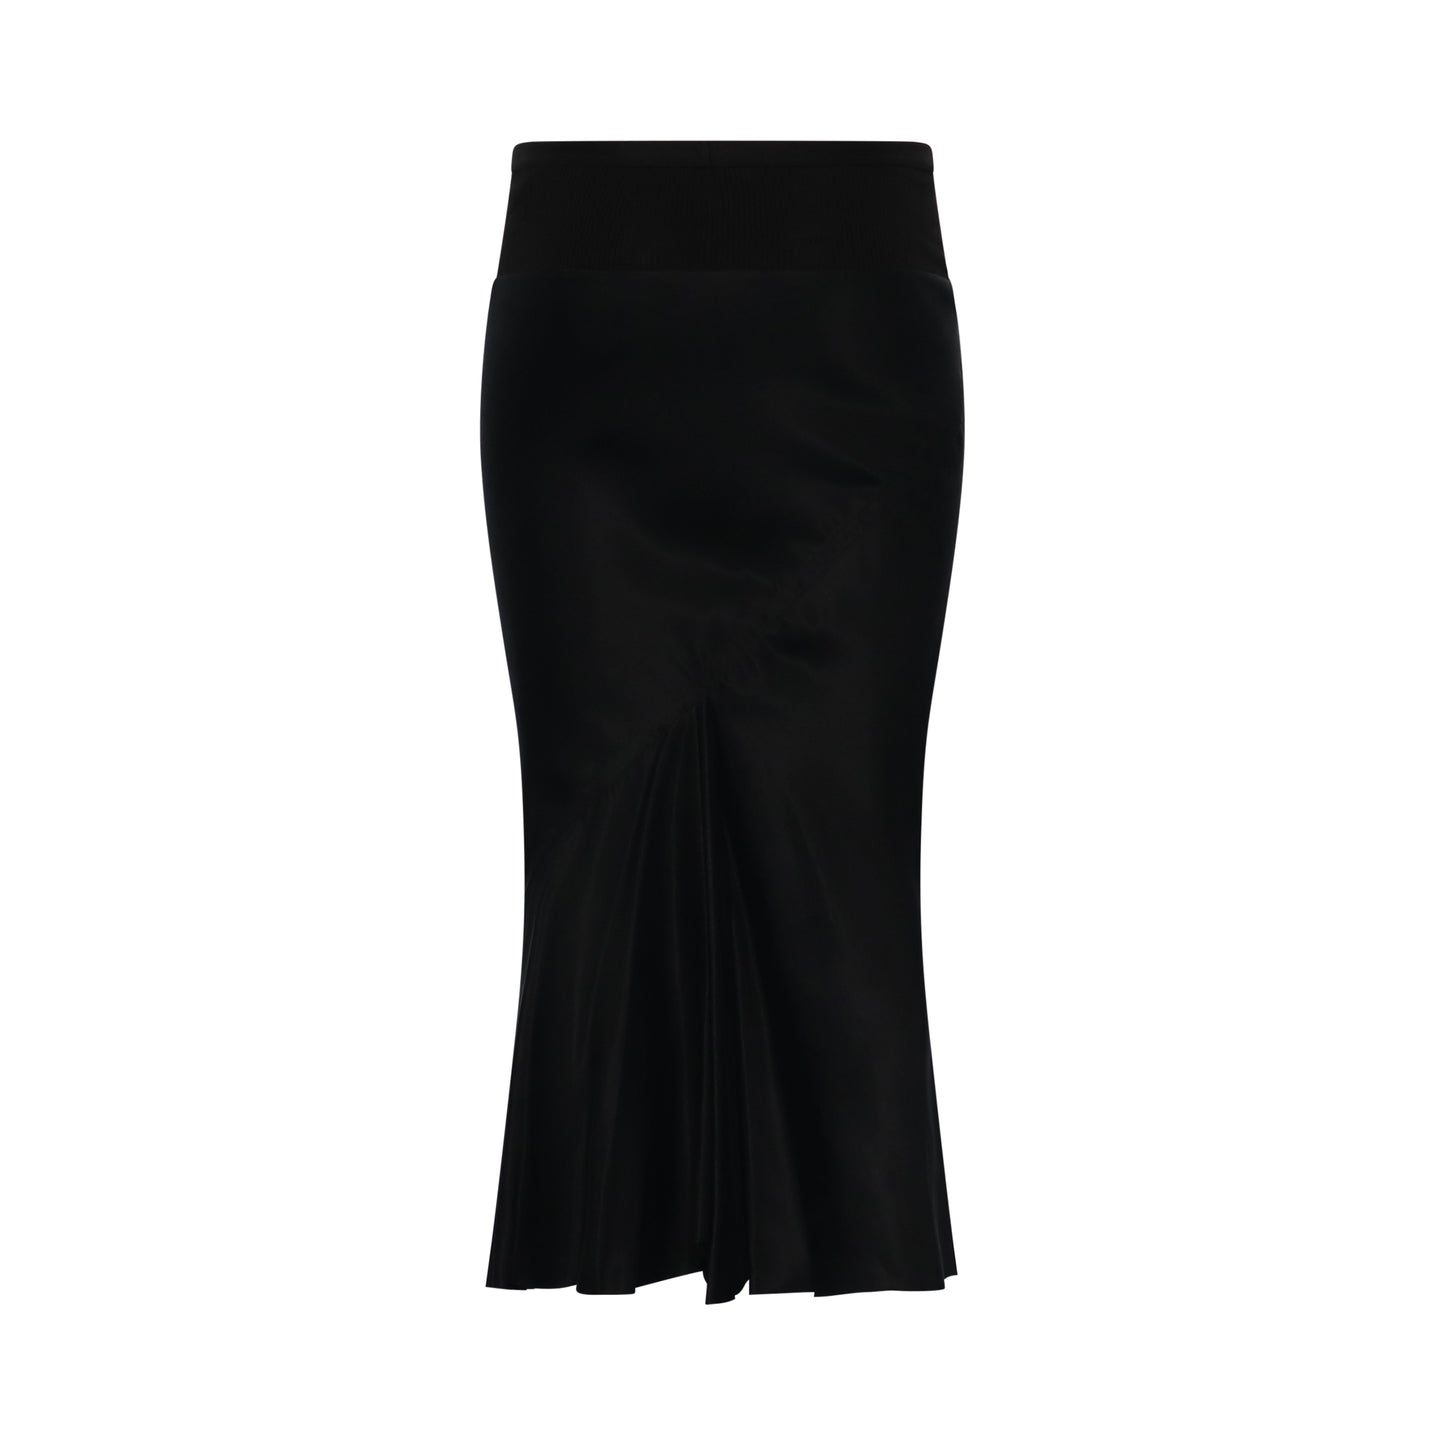 Knee Bias Skirt in Black